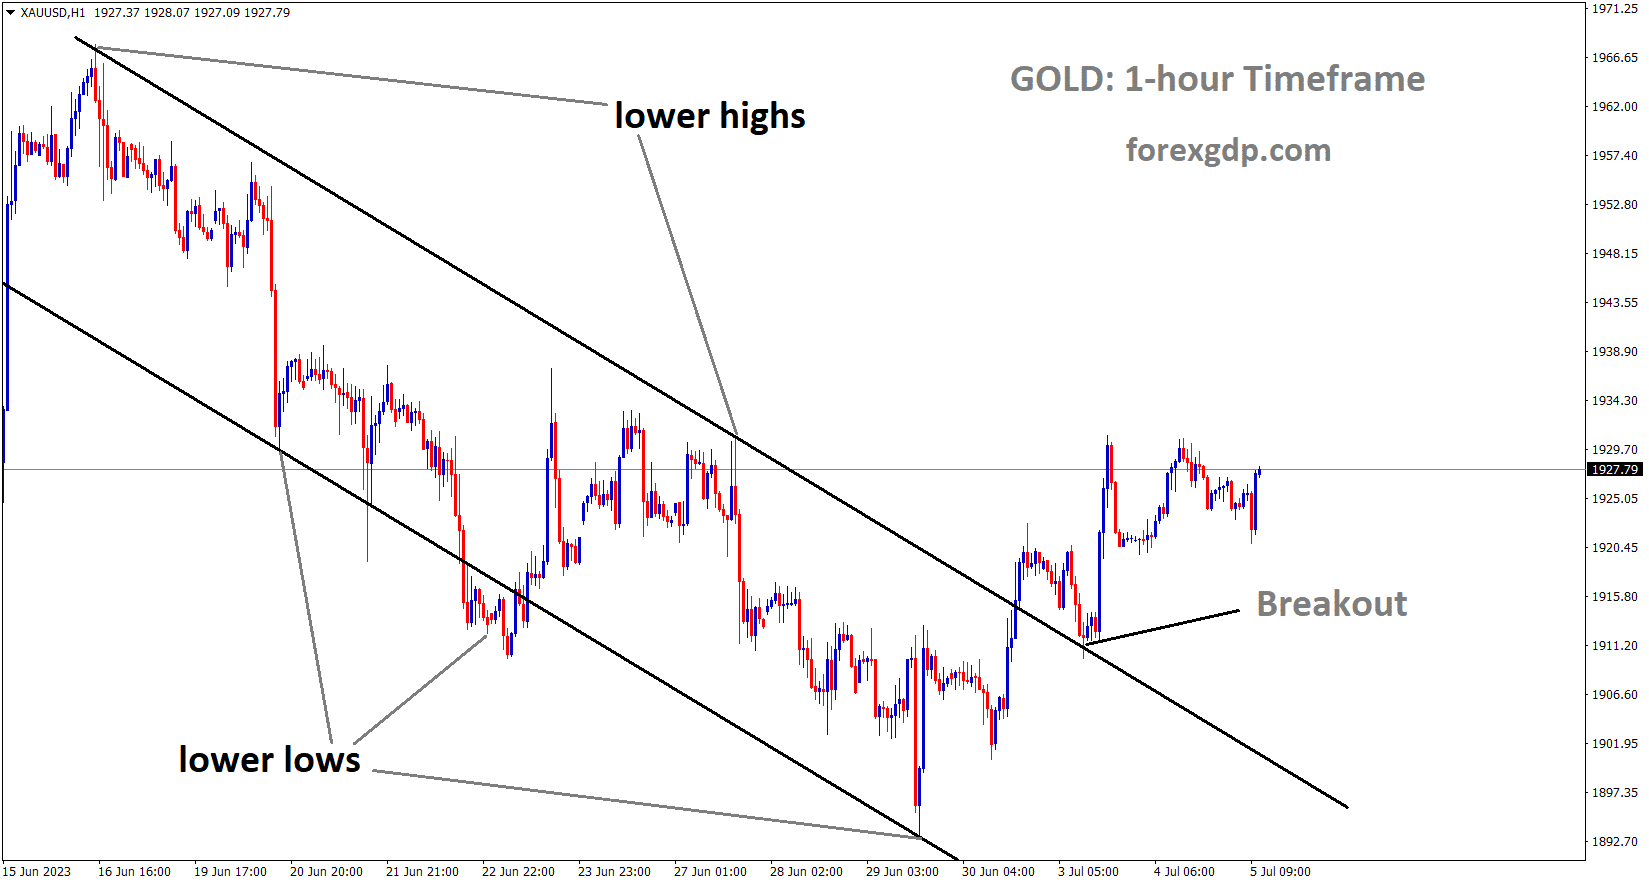 XAUUSD Gold Price has broken the Descending channel in upside